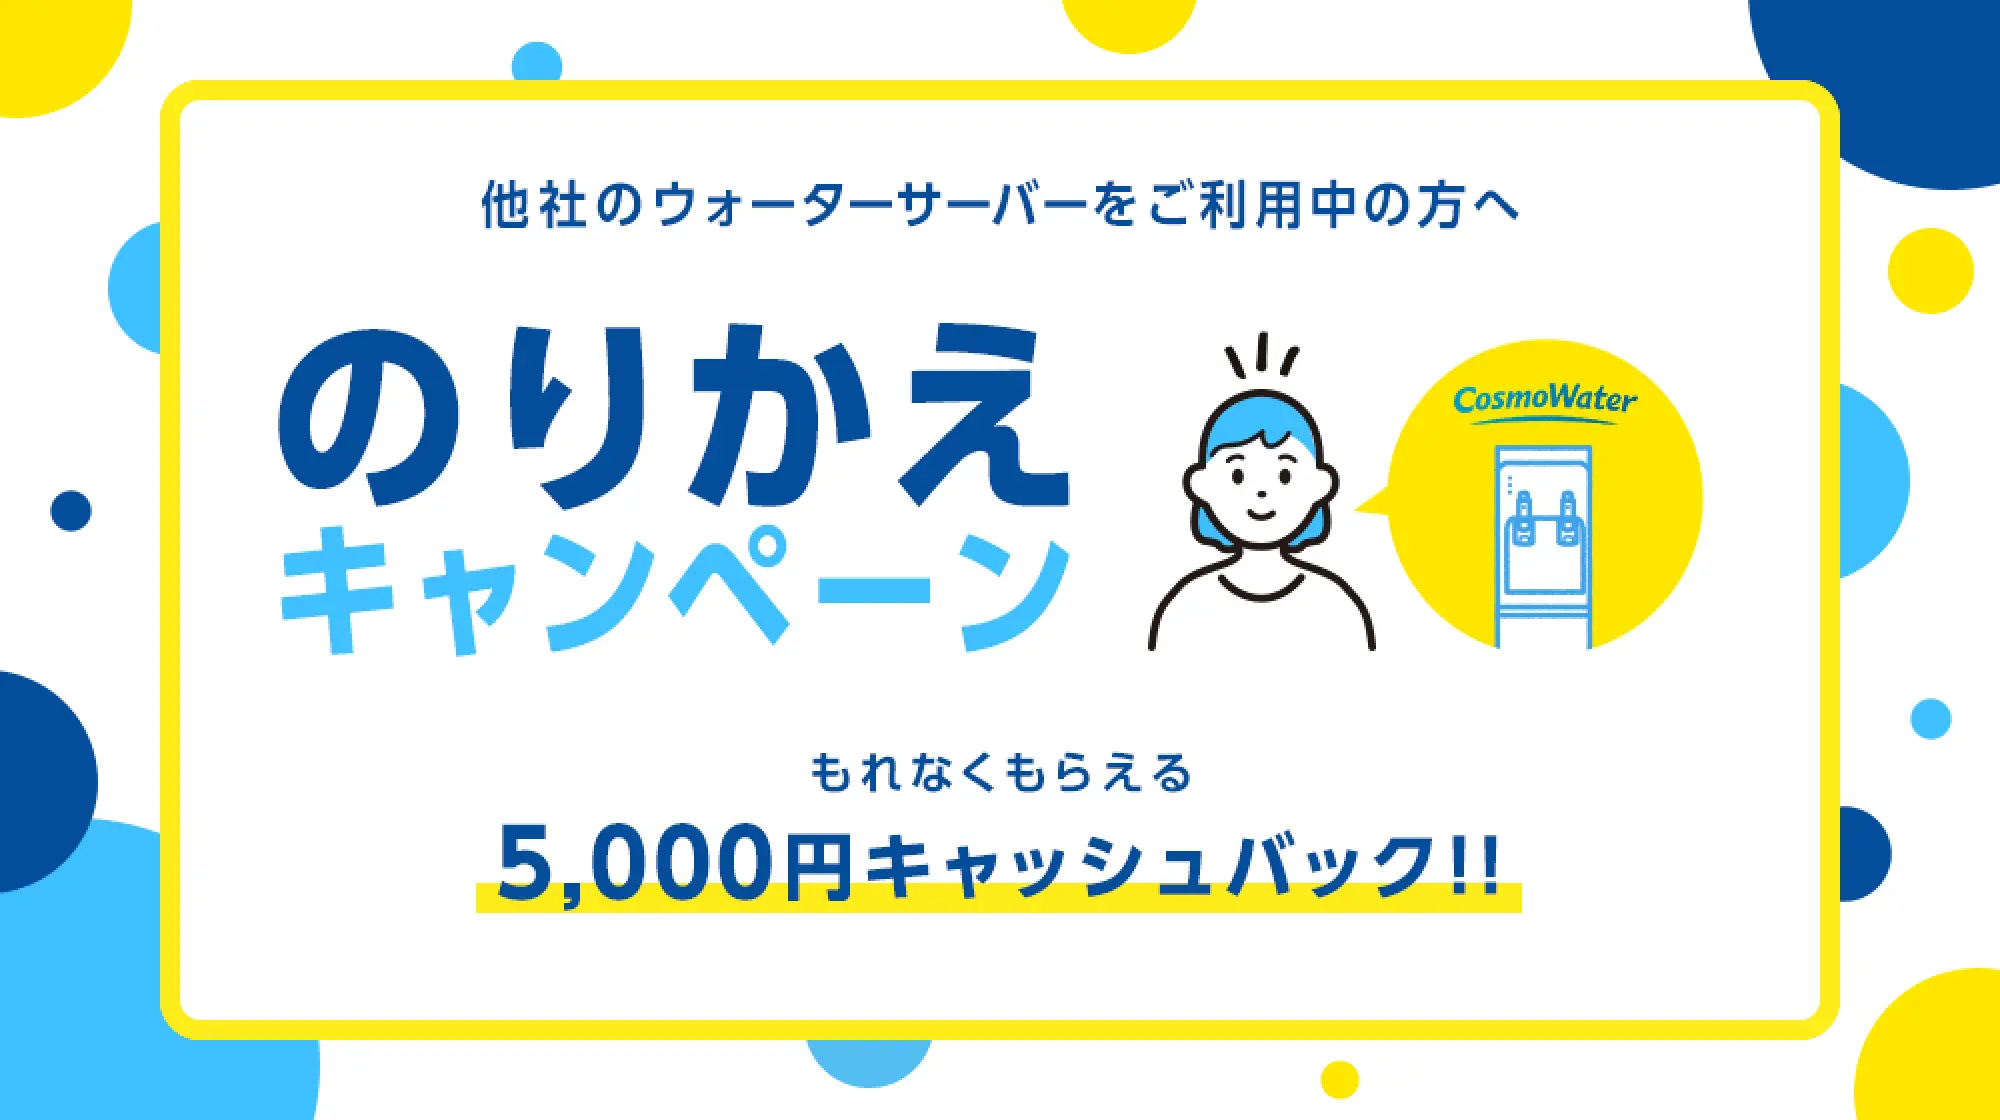 【期間限定】コスモウォーター「5000円キャッシュバック」のりかえキャンペーンコード